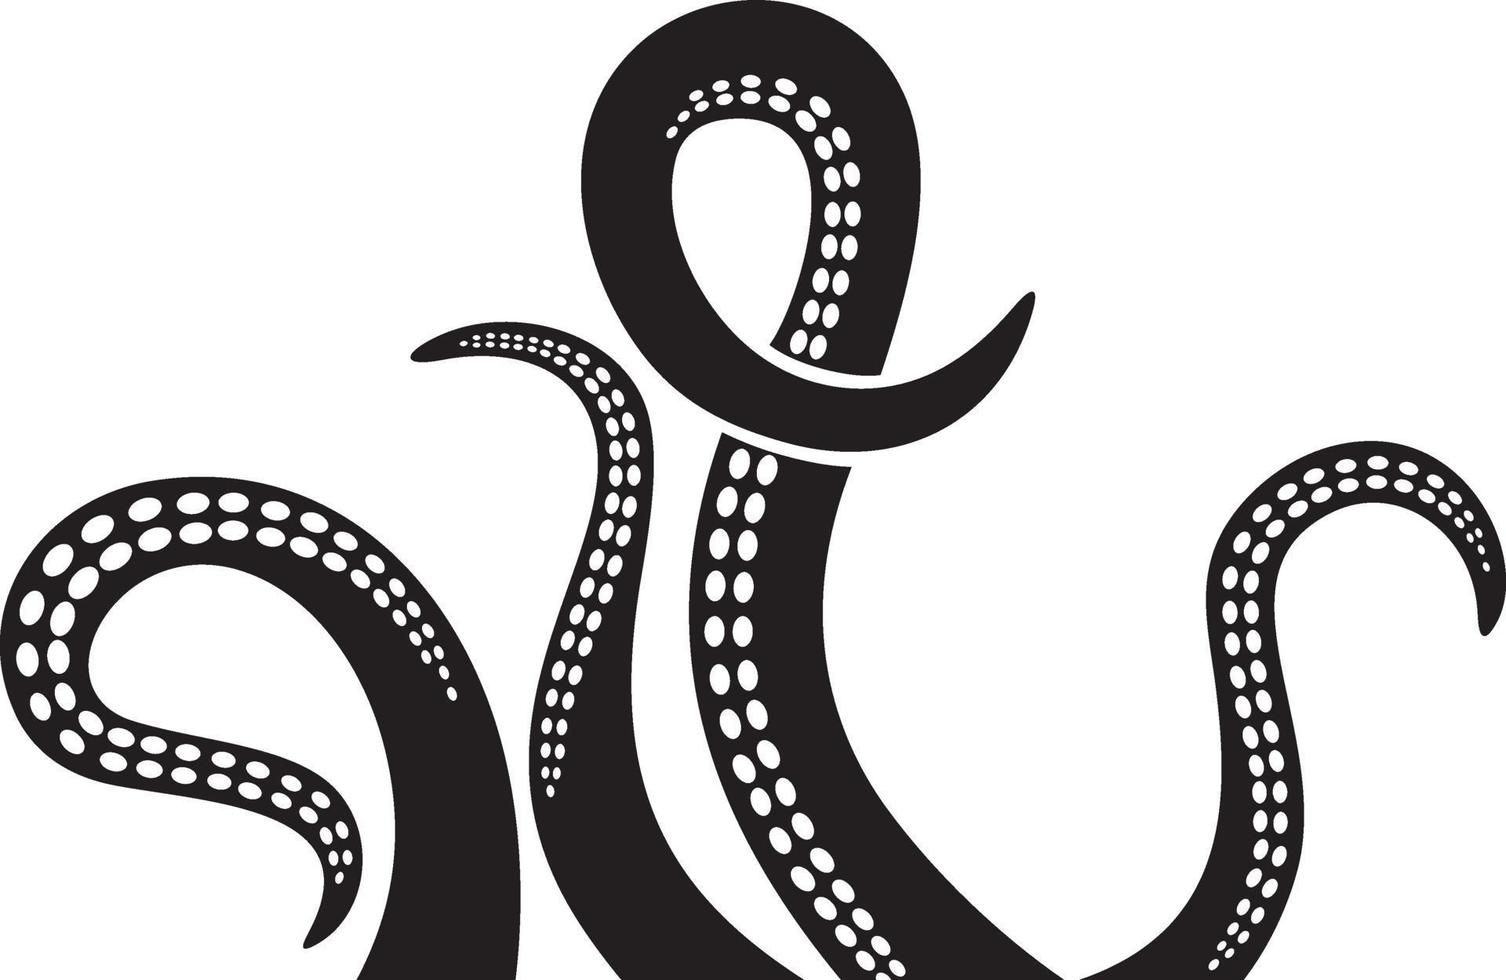 Octopus Tentacles design vector